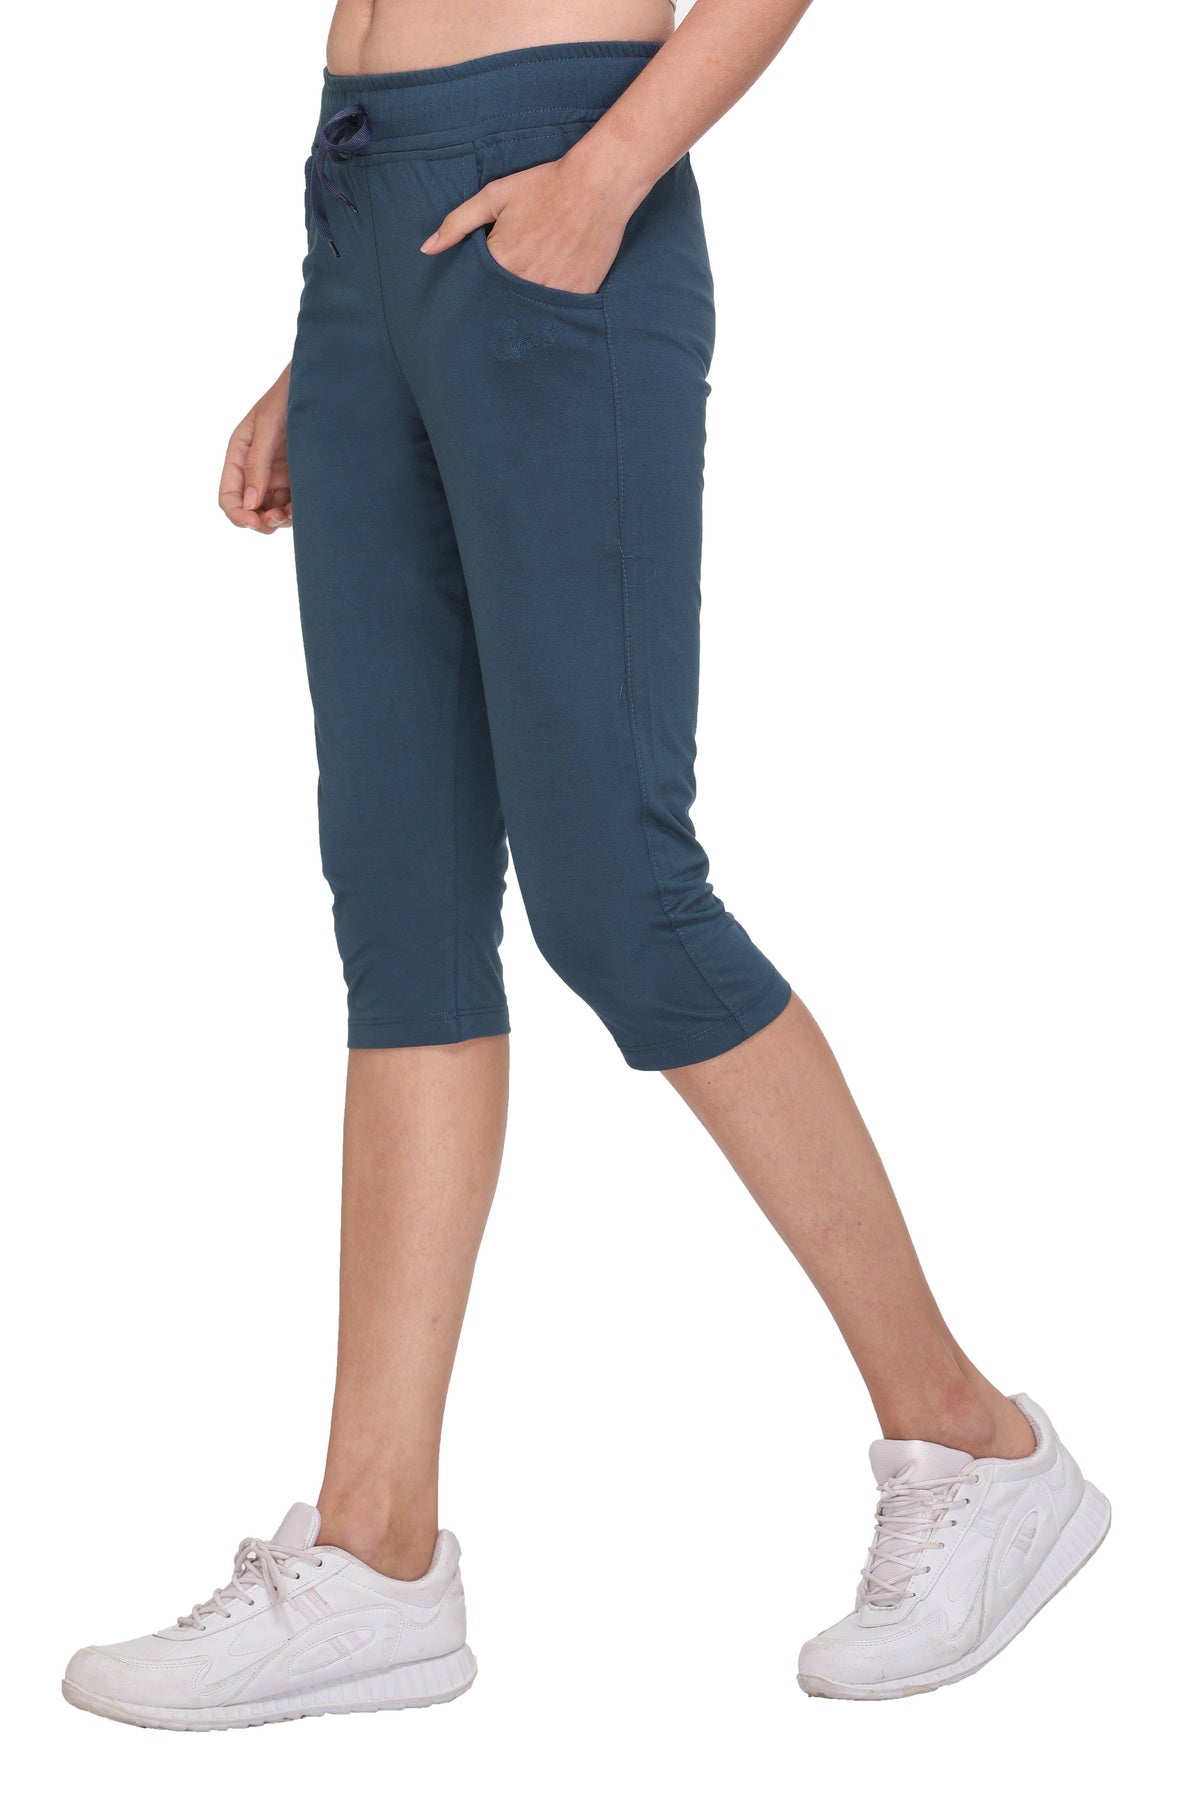 Cotton Capris For Women - Half Pants Pack Of 2 (sky Blue & Black